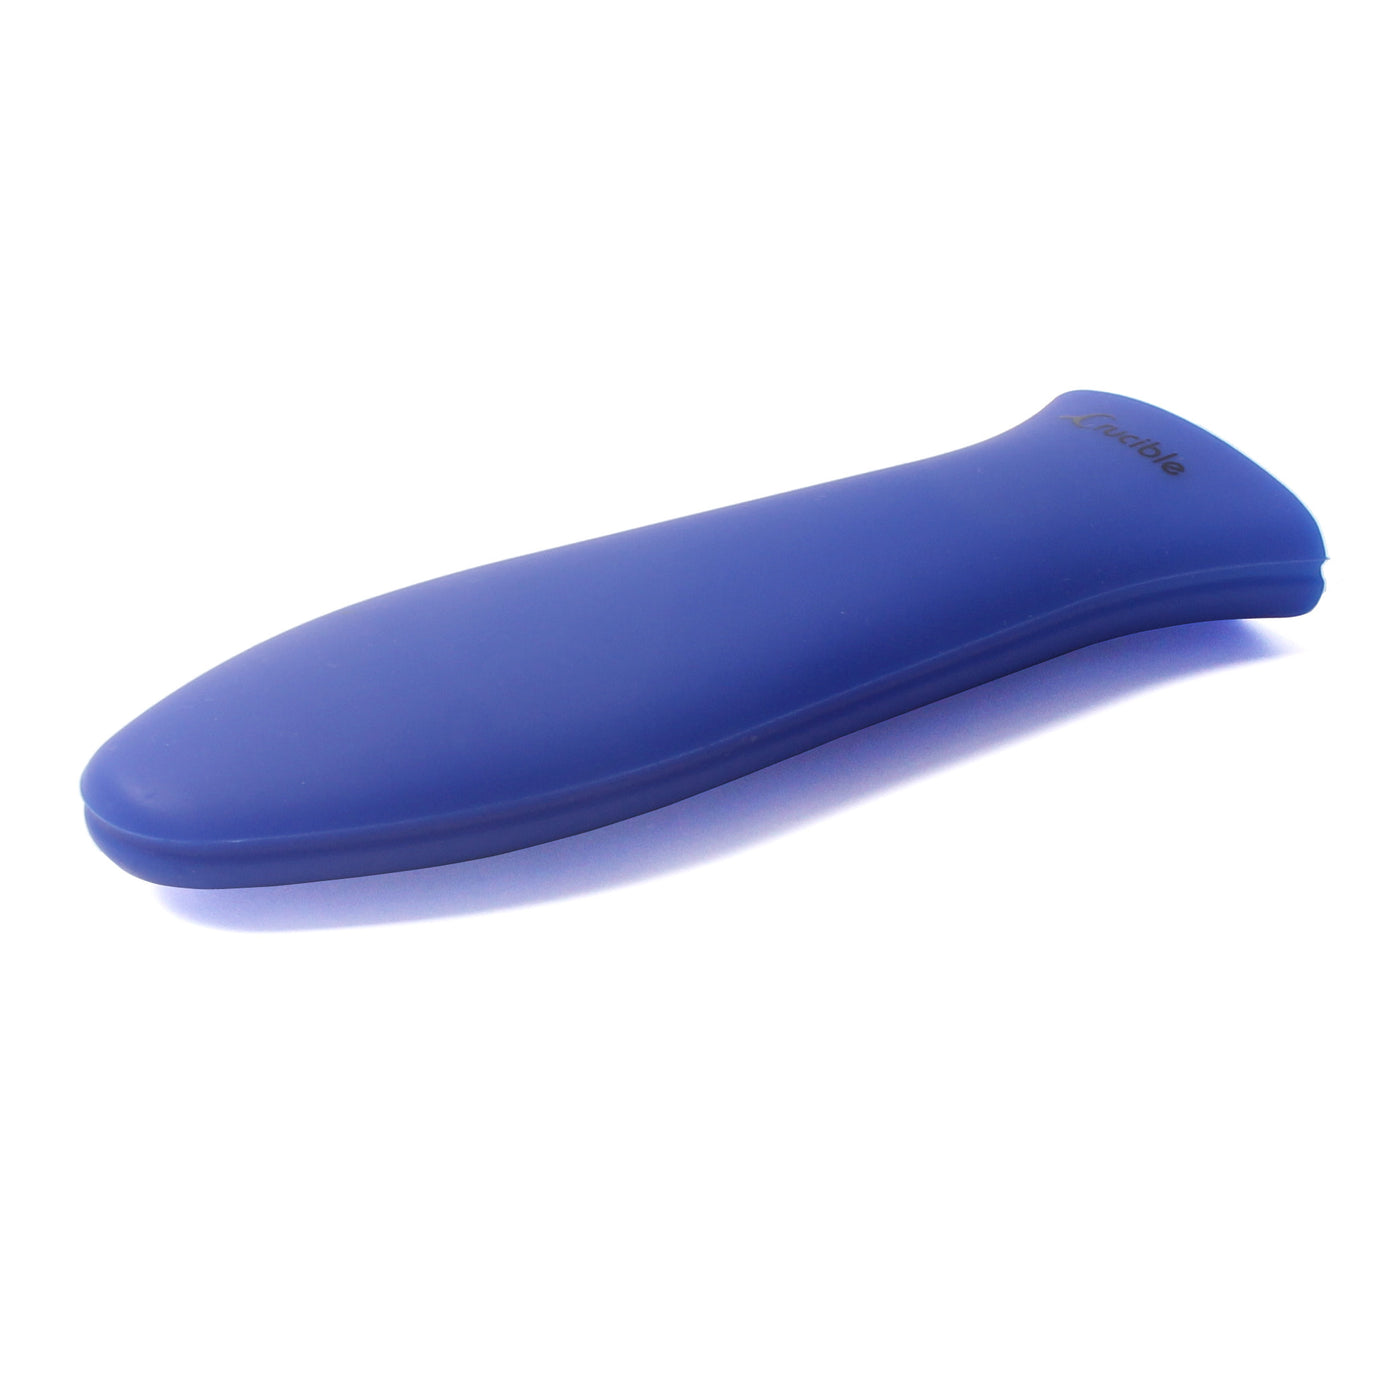 Siliconen houder met heet handvat, pannenlap (blauw groot), mouwgreep, handgreepafdekking